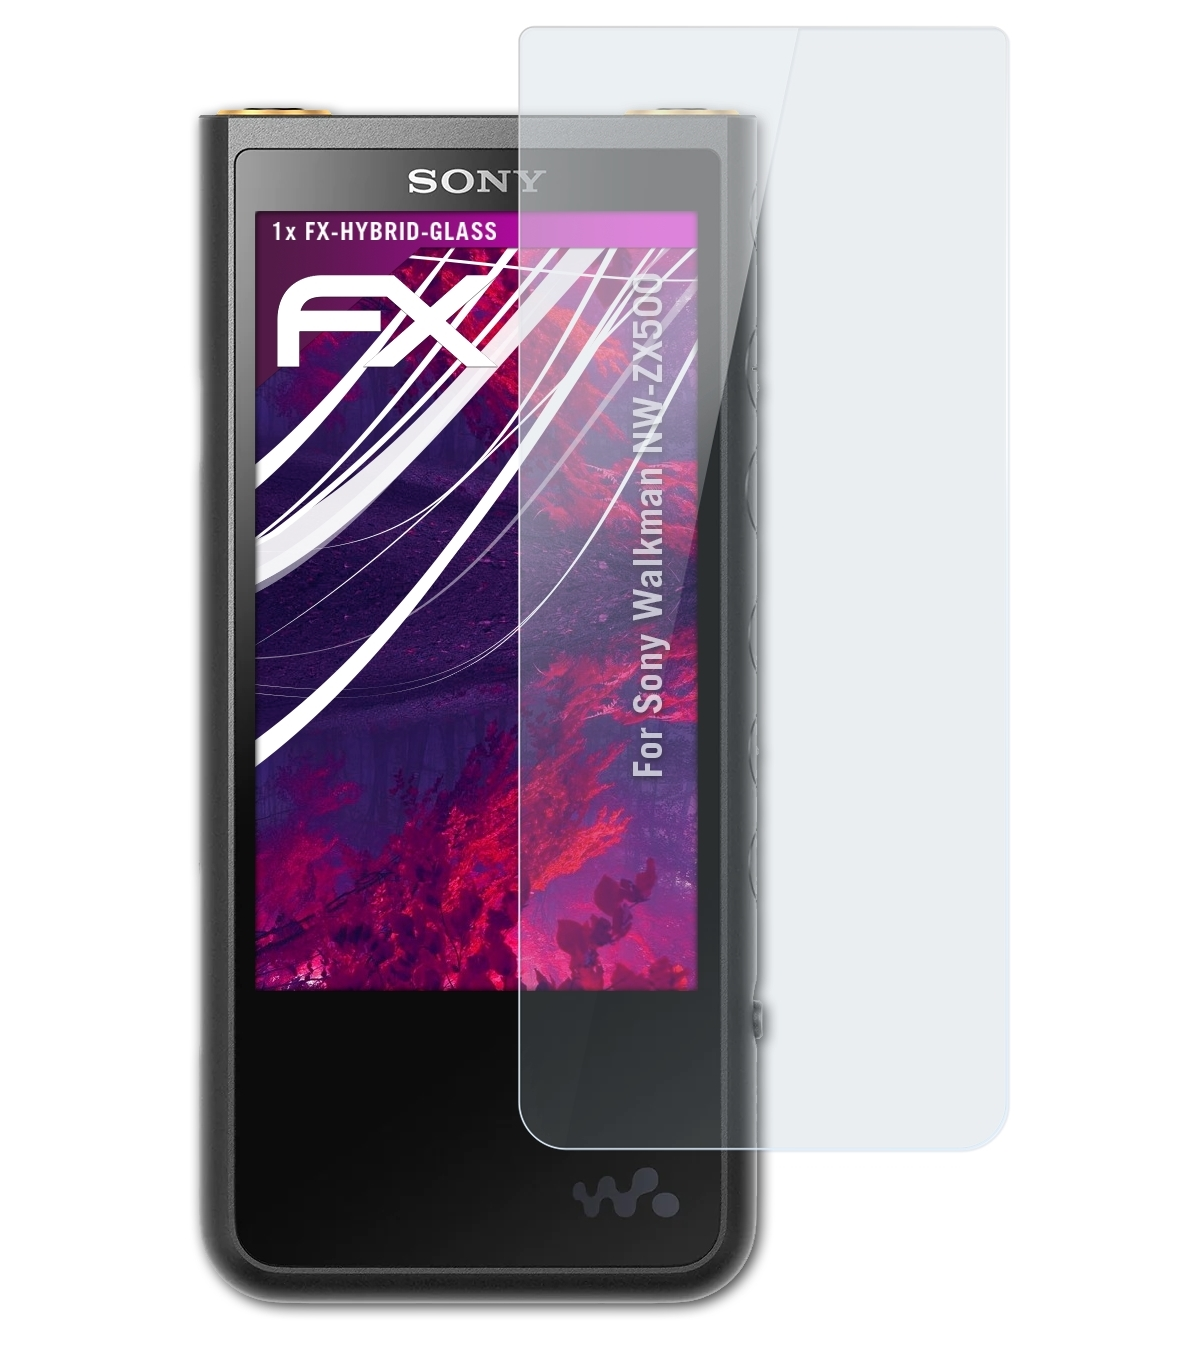 ATFOLIX FX-Hybrid-Glass Schutzglas(für Walkman Sony NW-ZX500)